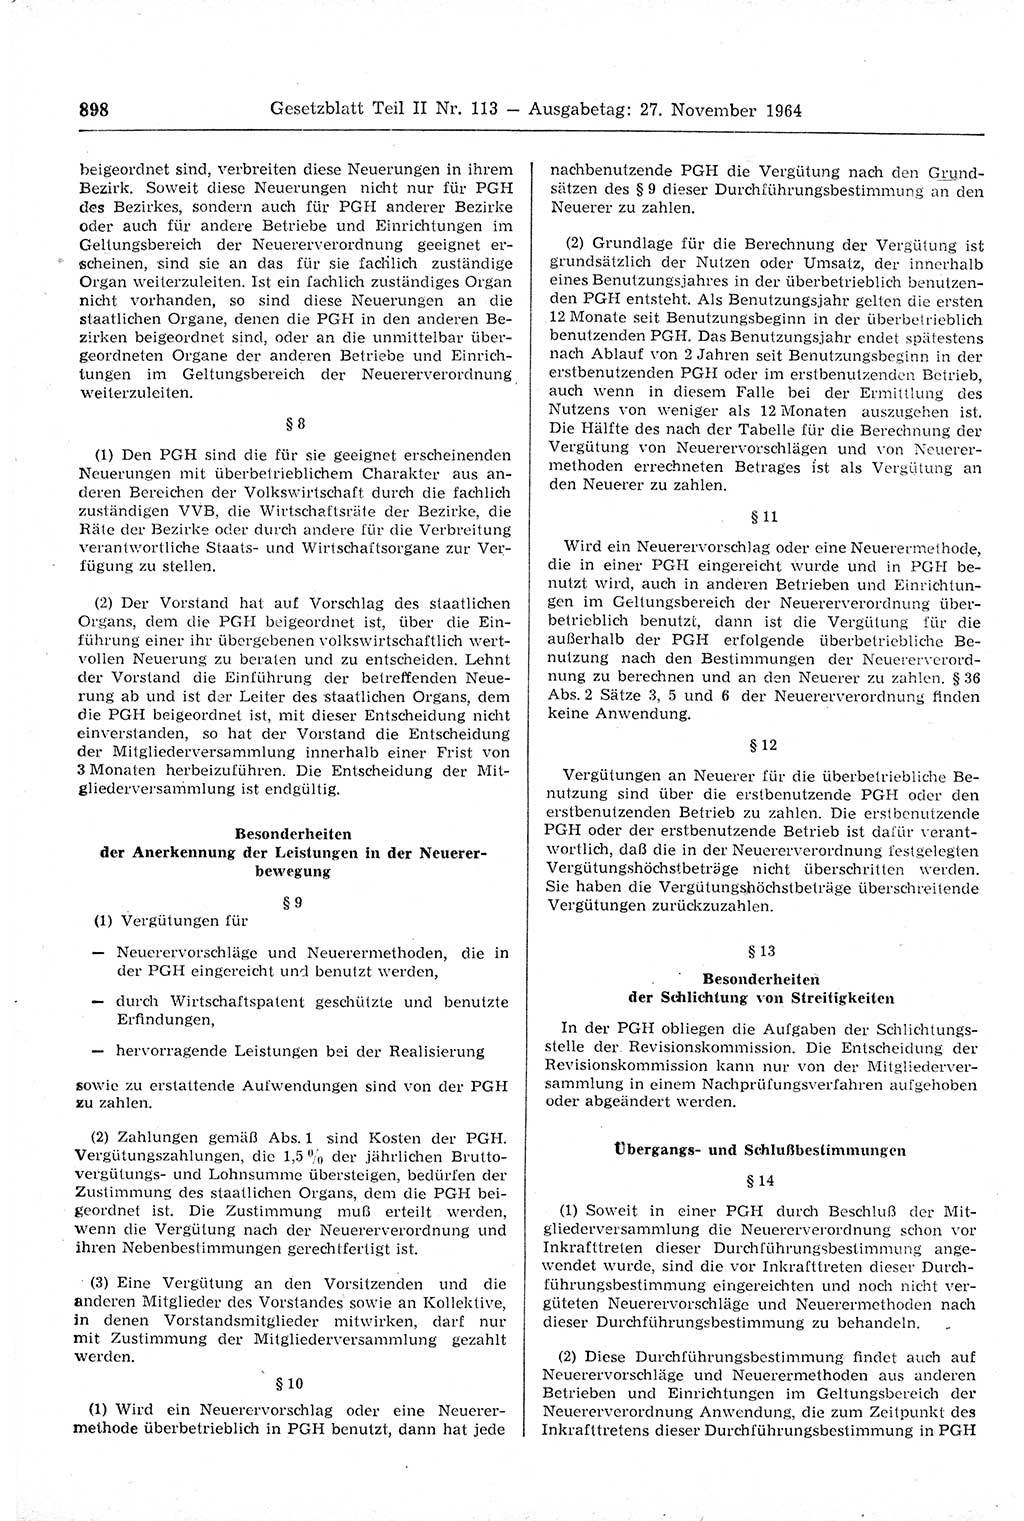 Gesetzblatt (GBl.) der Deutschen Demokratischen Republik (DDR) Teil ⅠⅠ 1964, Seite 898 (GBl. DDR ⅠⅠ 1964, S. 898)